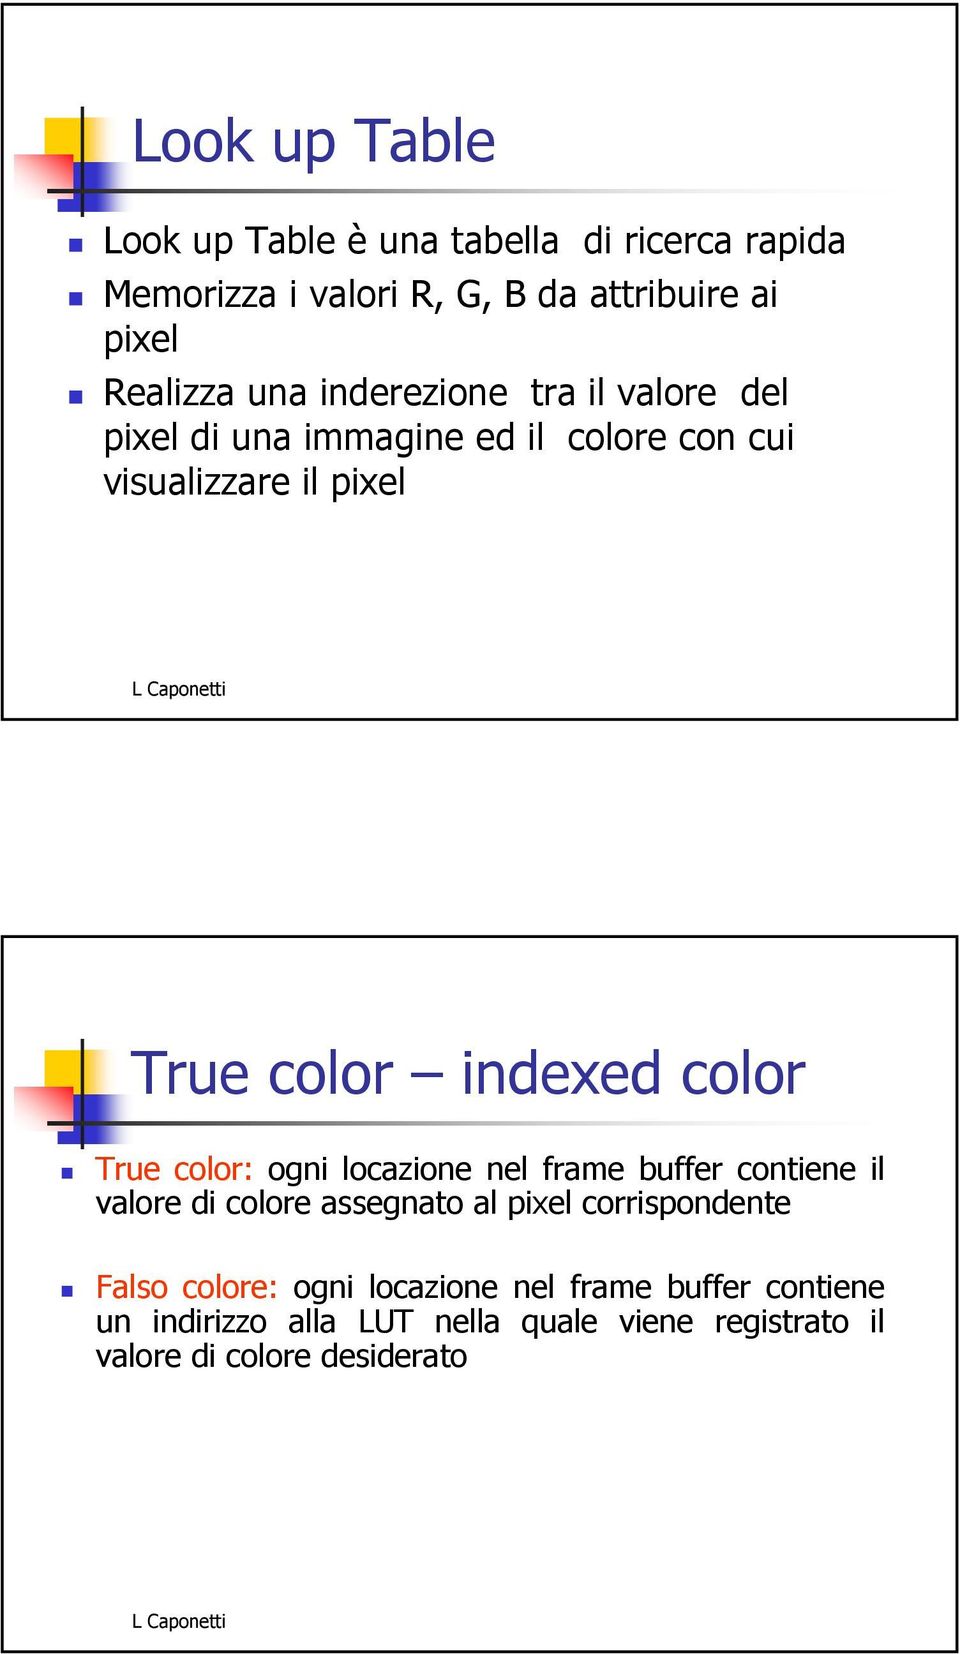 color True color: ogni locazione nel frame buffer contiene il valore di colore assegnato al pixel corrispondente Falso